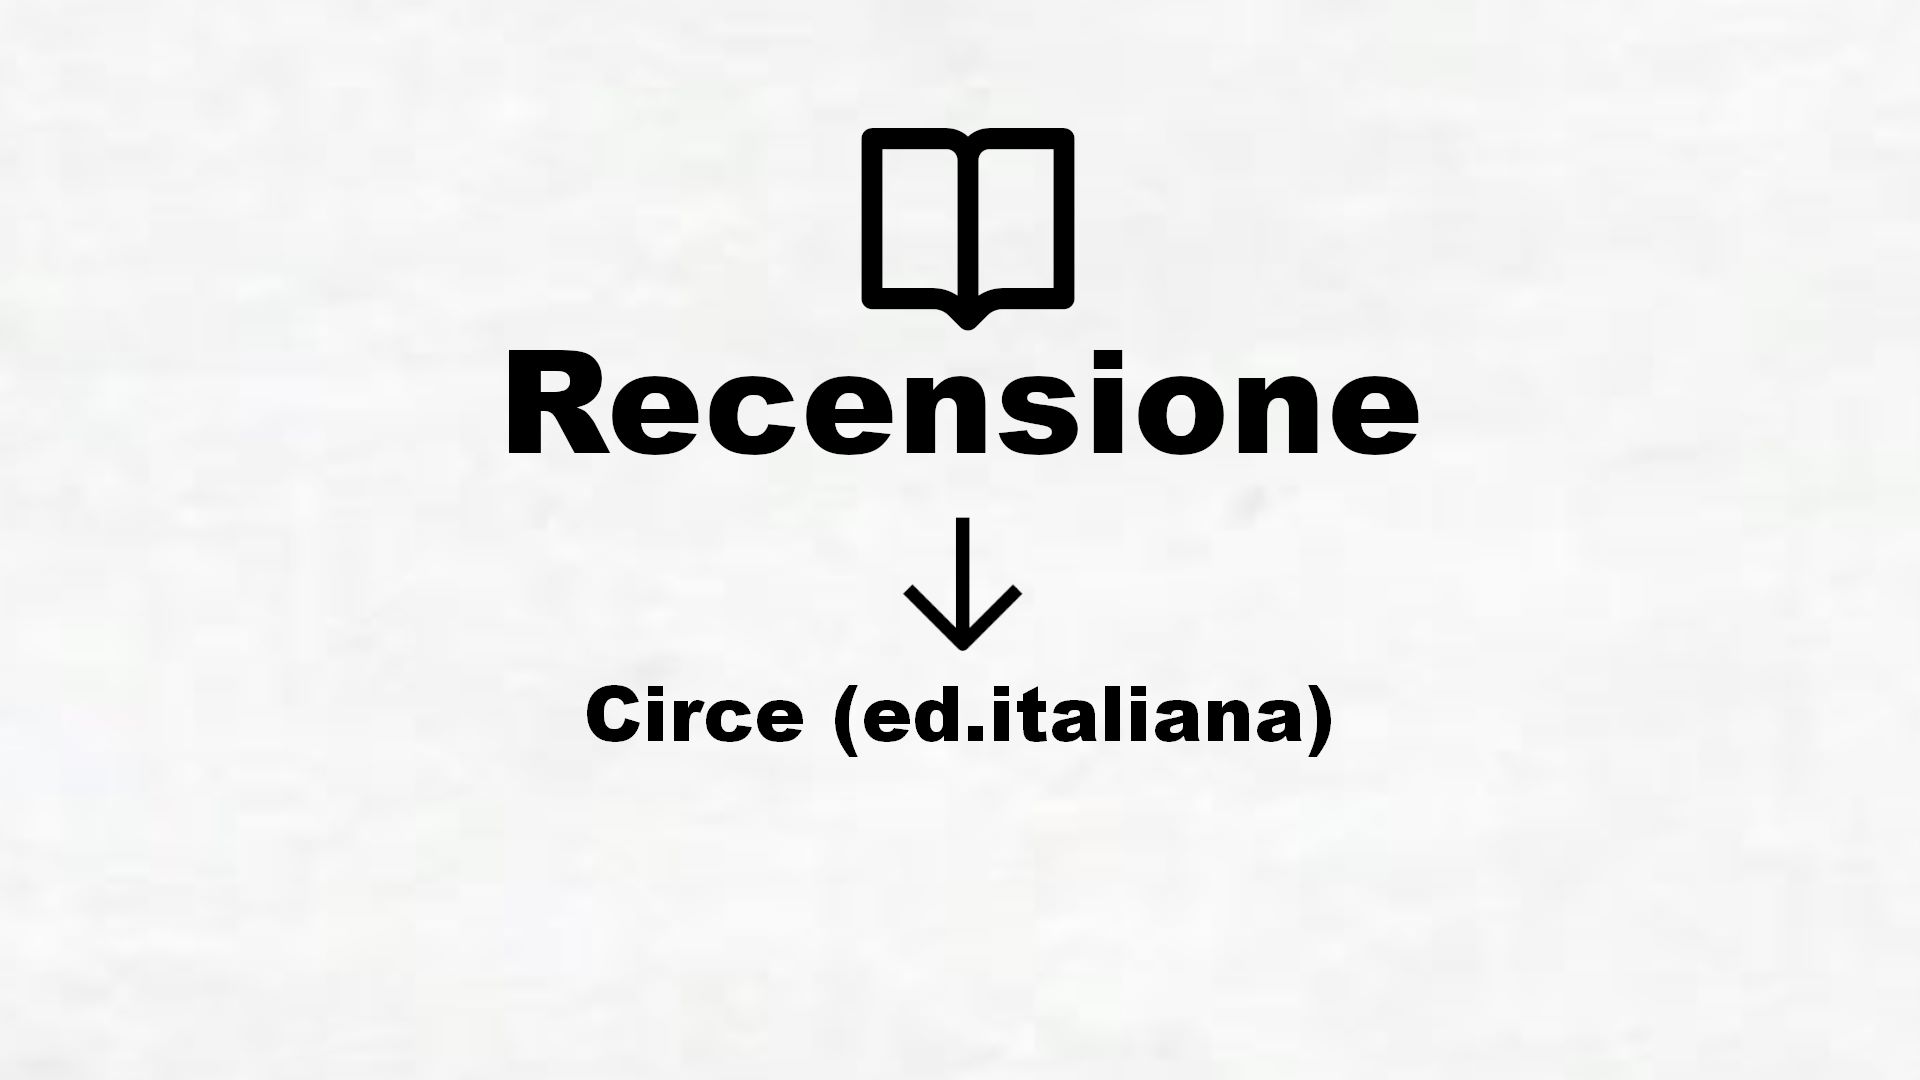 Circe (ed.italiana) – Recensione Libro